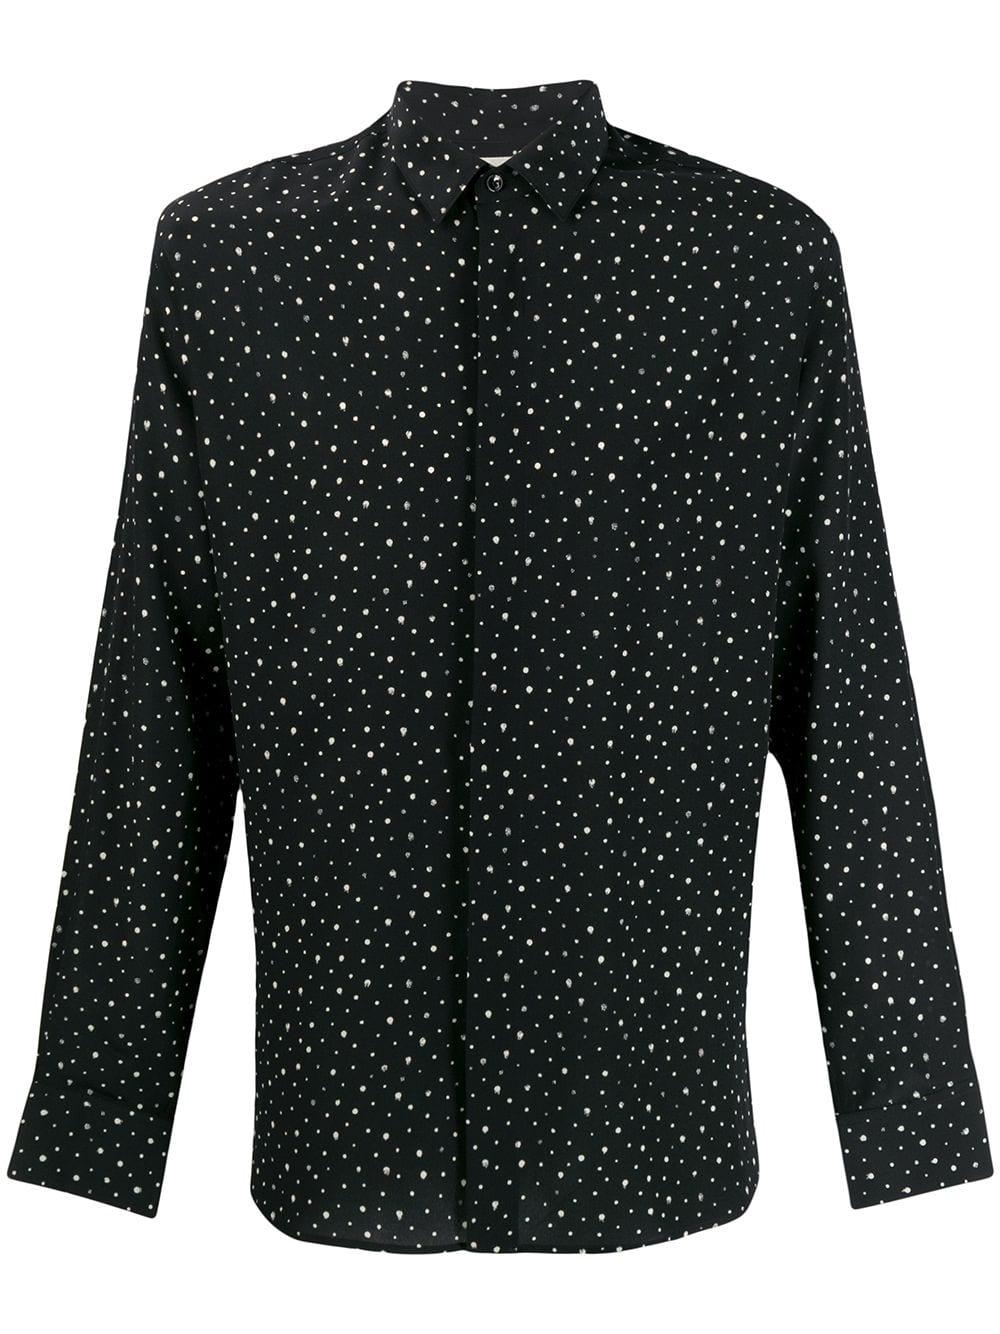 Saint Laurent Silk Polka Dot Shirt in Black for Men - Lyst